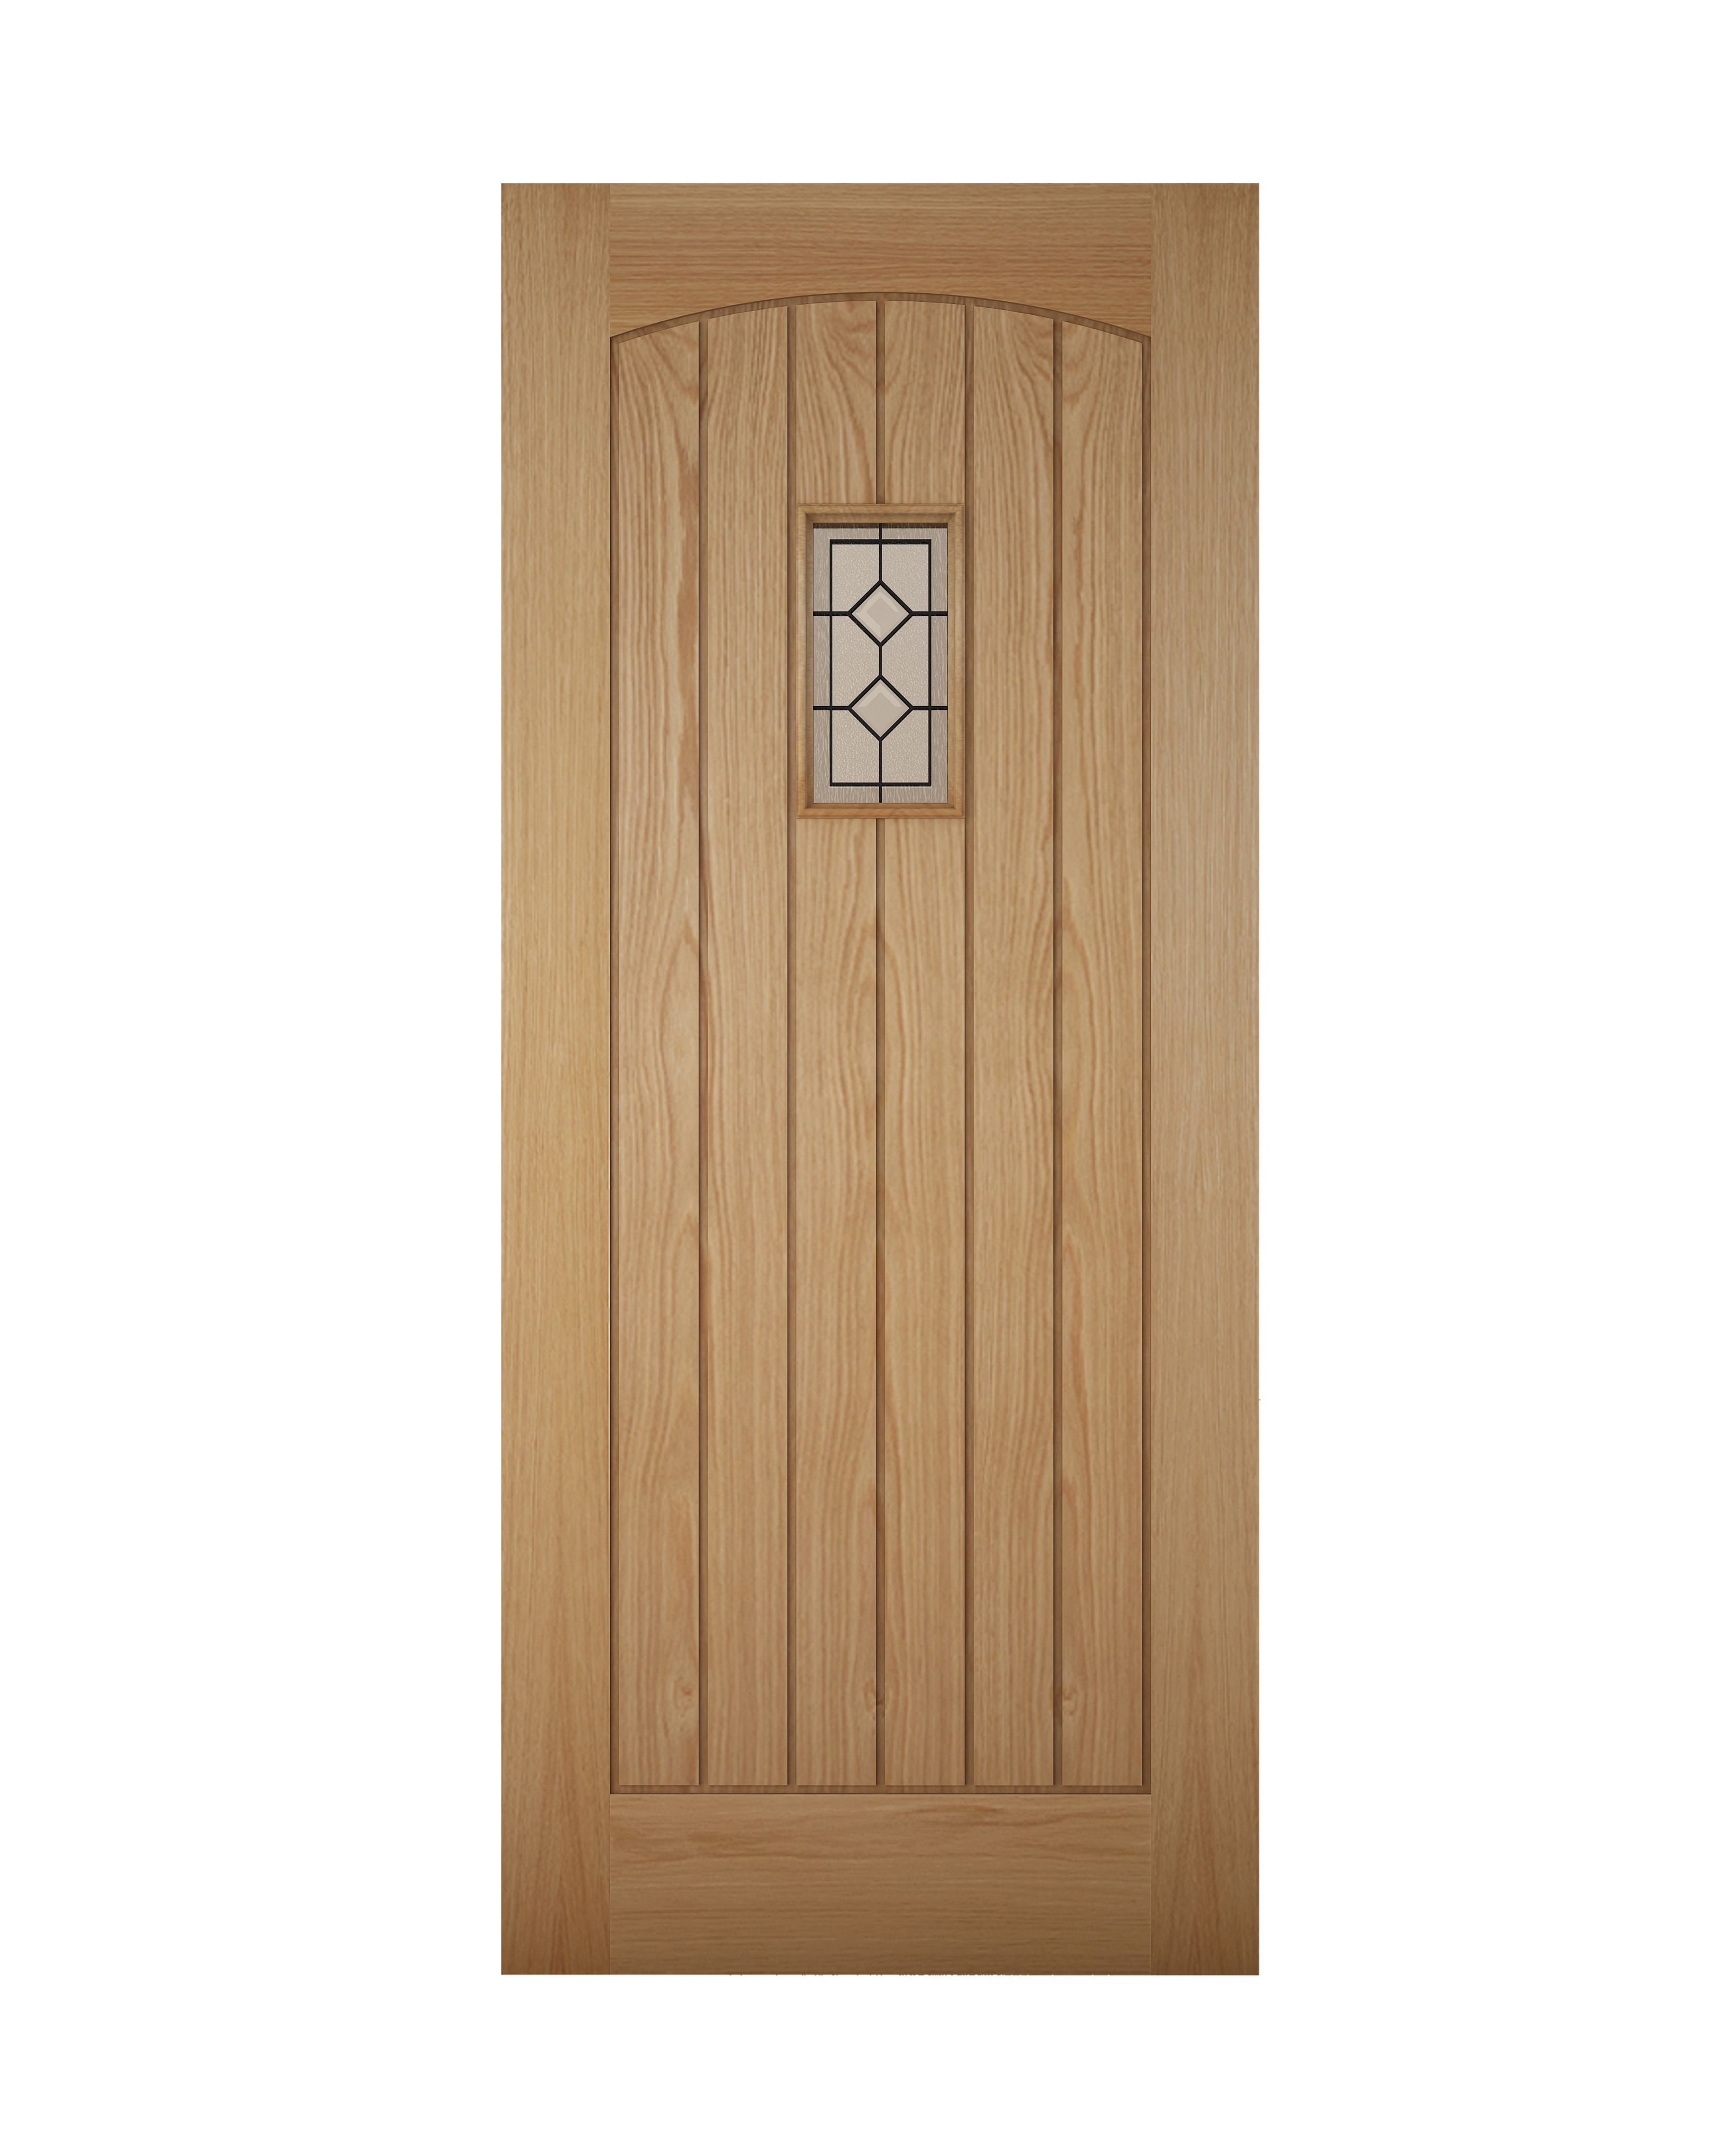 Glazed Cottage White oak veneer Left & RHed Front Door set, (H)2125mm (W)907mm